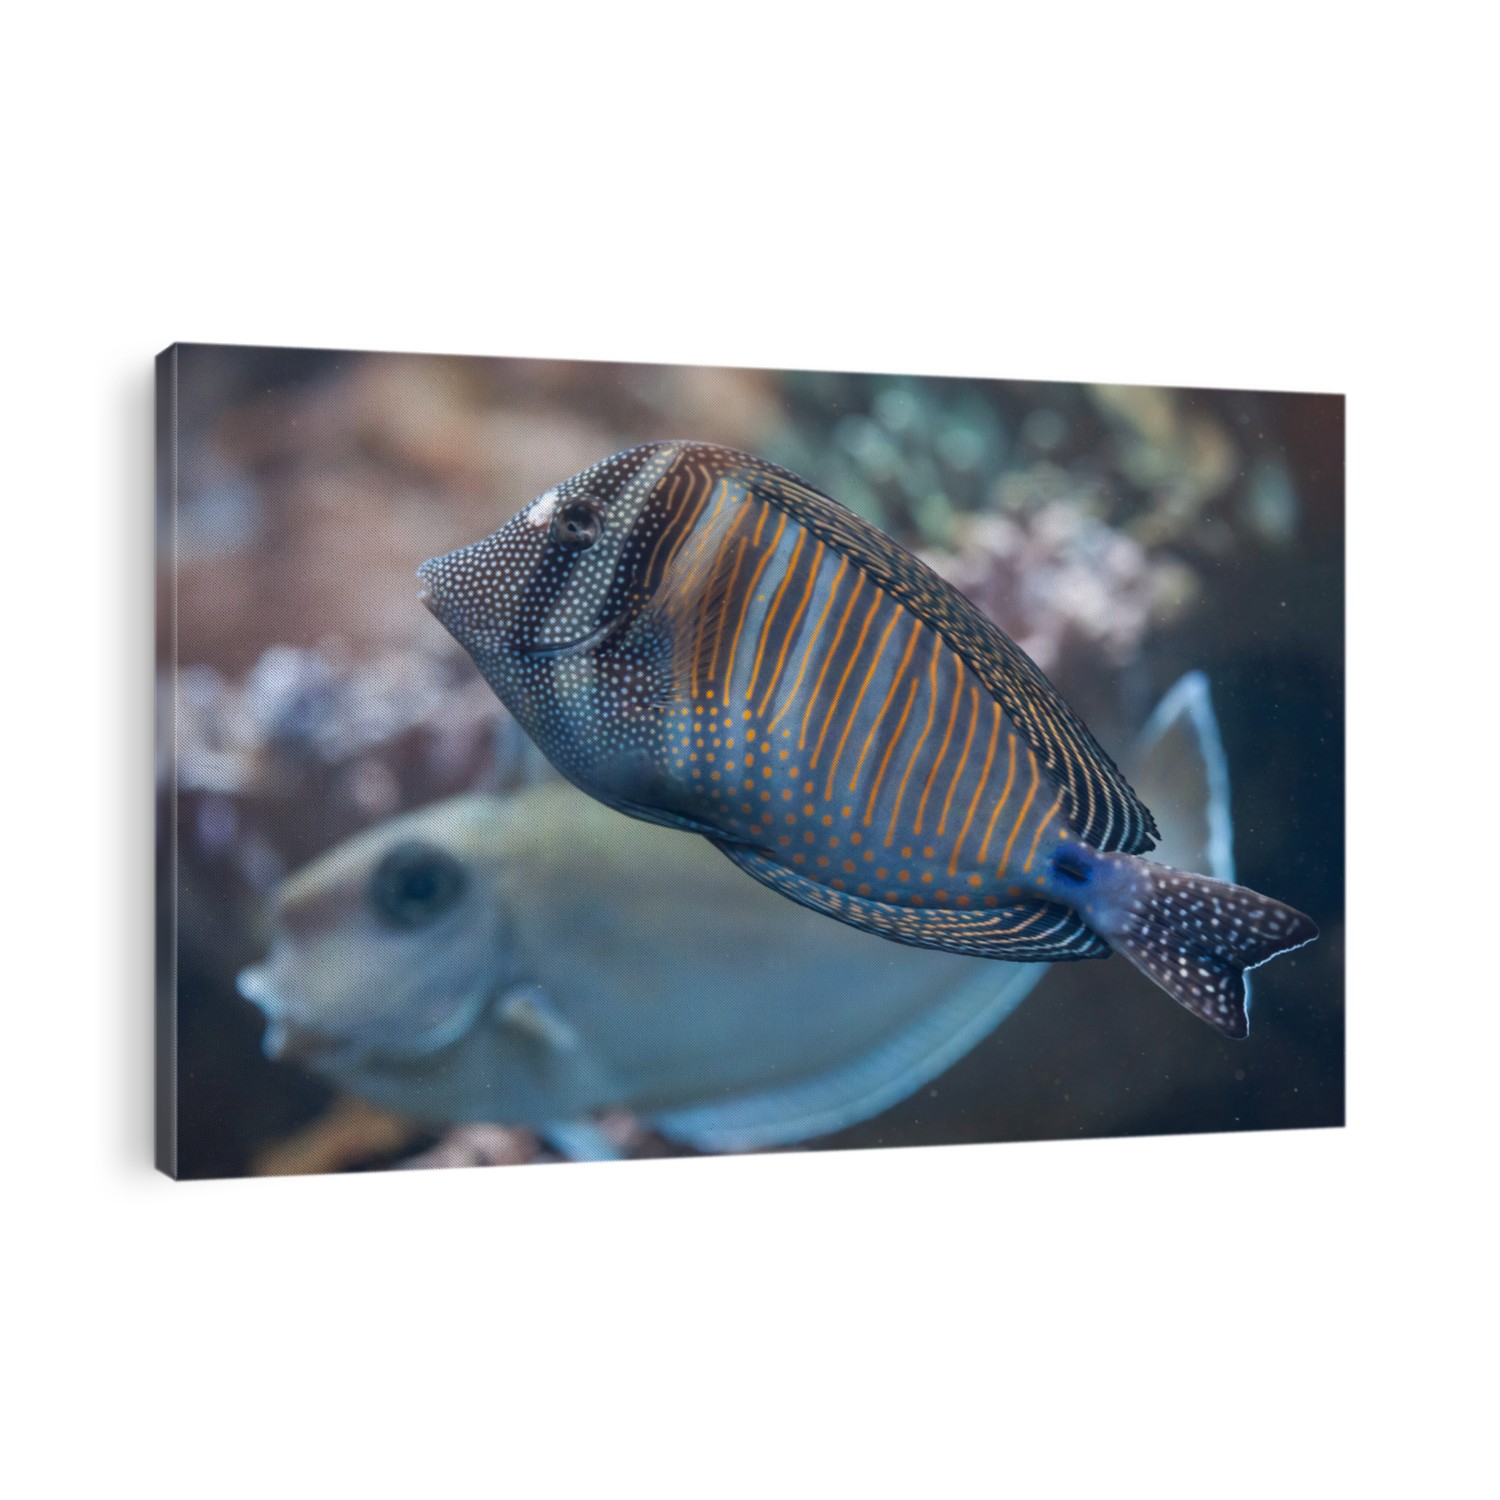 Red Sea sailfin tang (Zebrasoma desjardinii), also known as the Desjardin's sailfin tang. Wild life animal. 